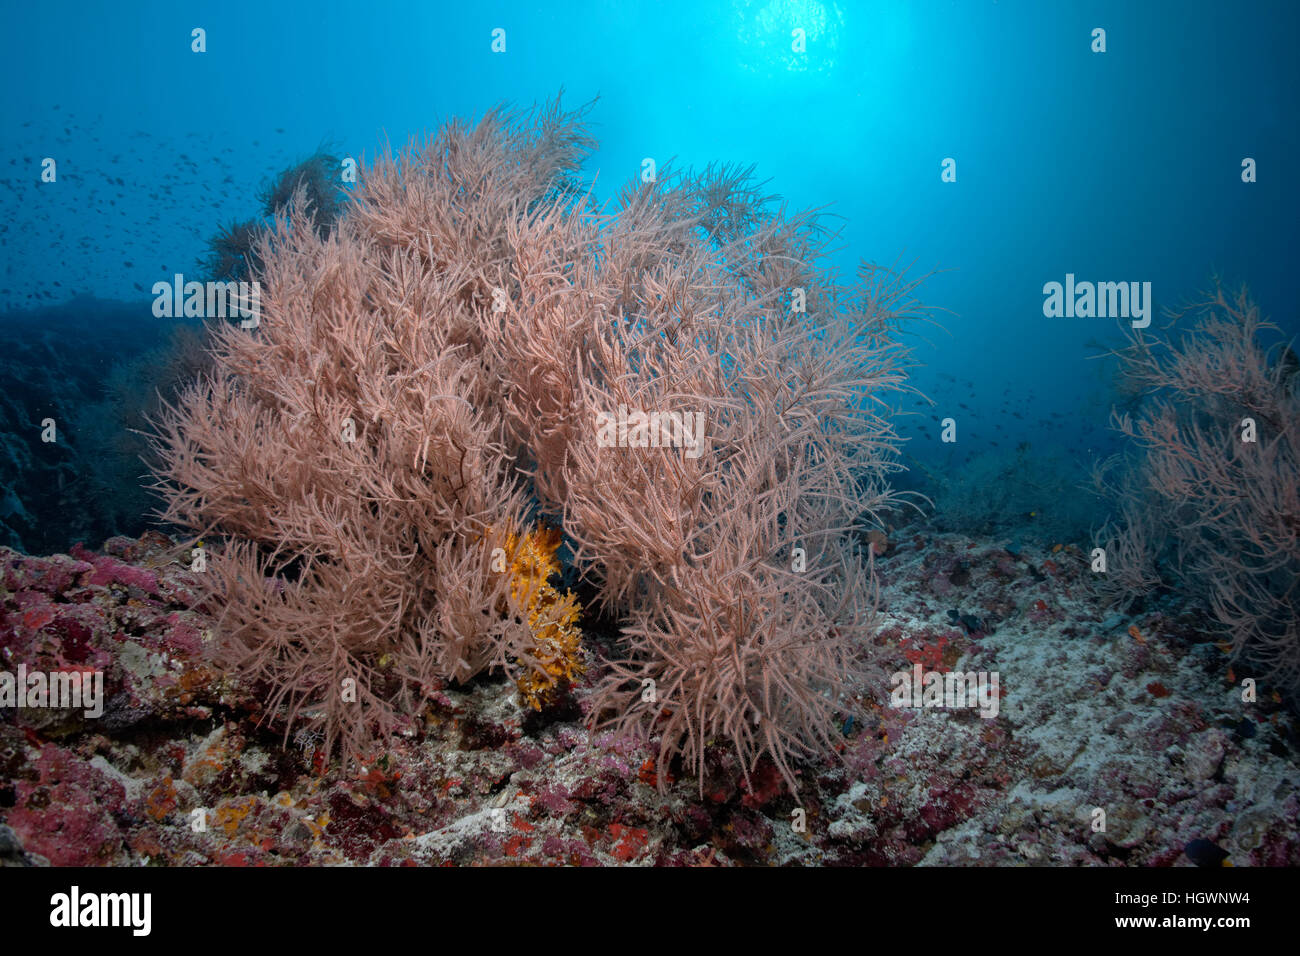 Coral reef avec corail noir (Antipathes sp.) Lhaviyani Atoll, Maldives Banque D'Images